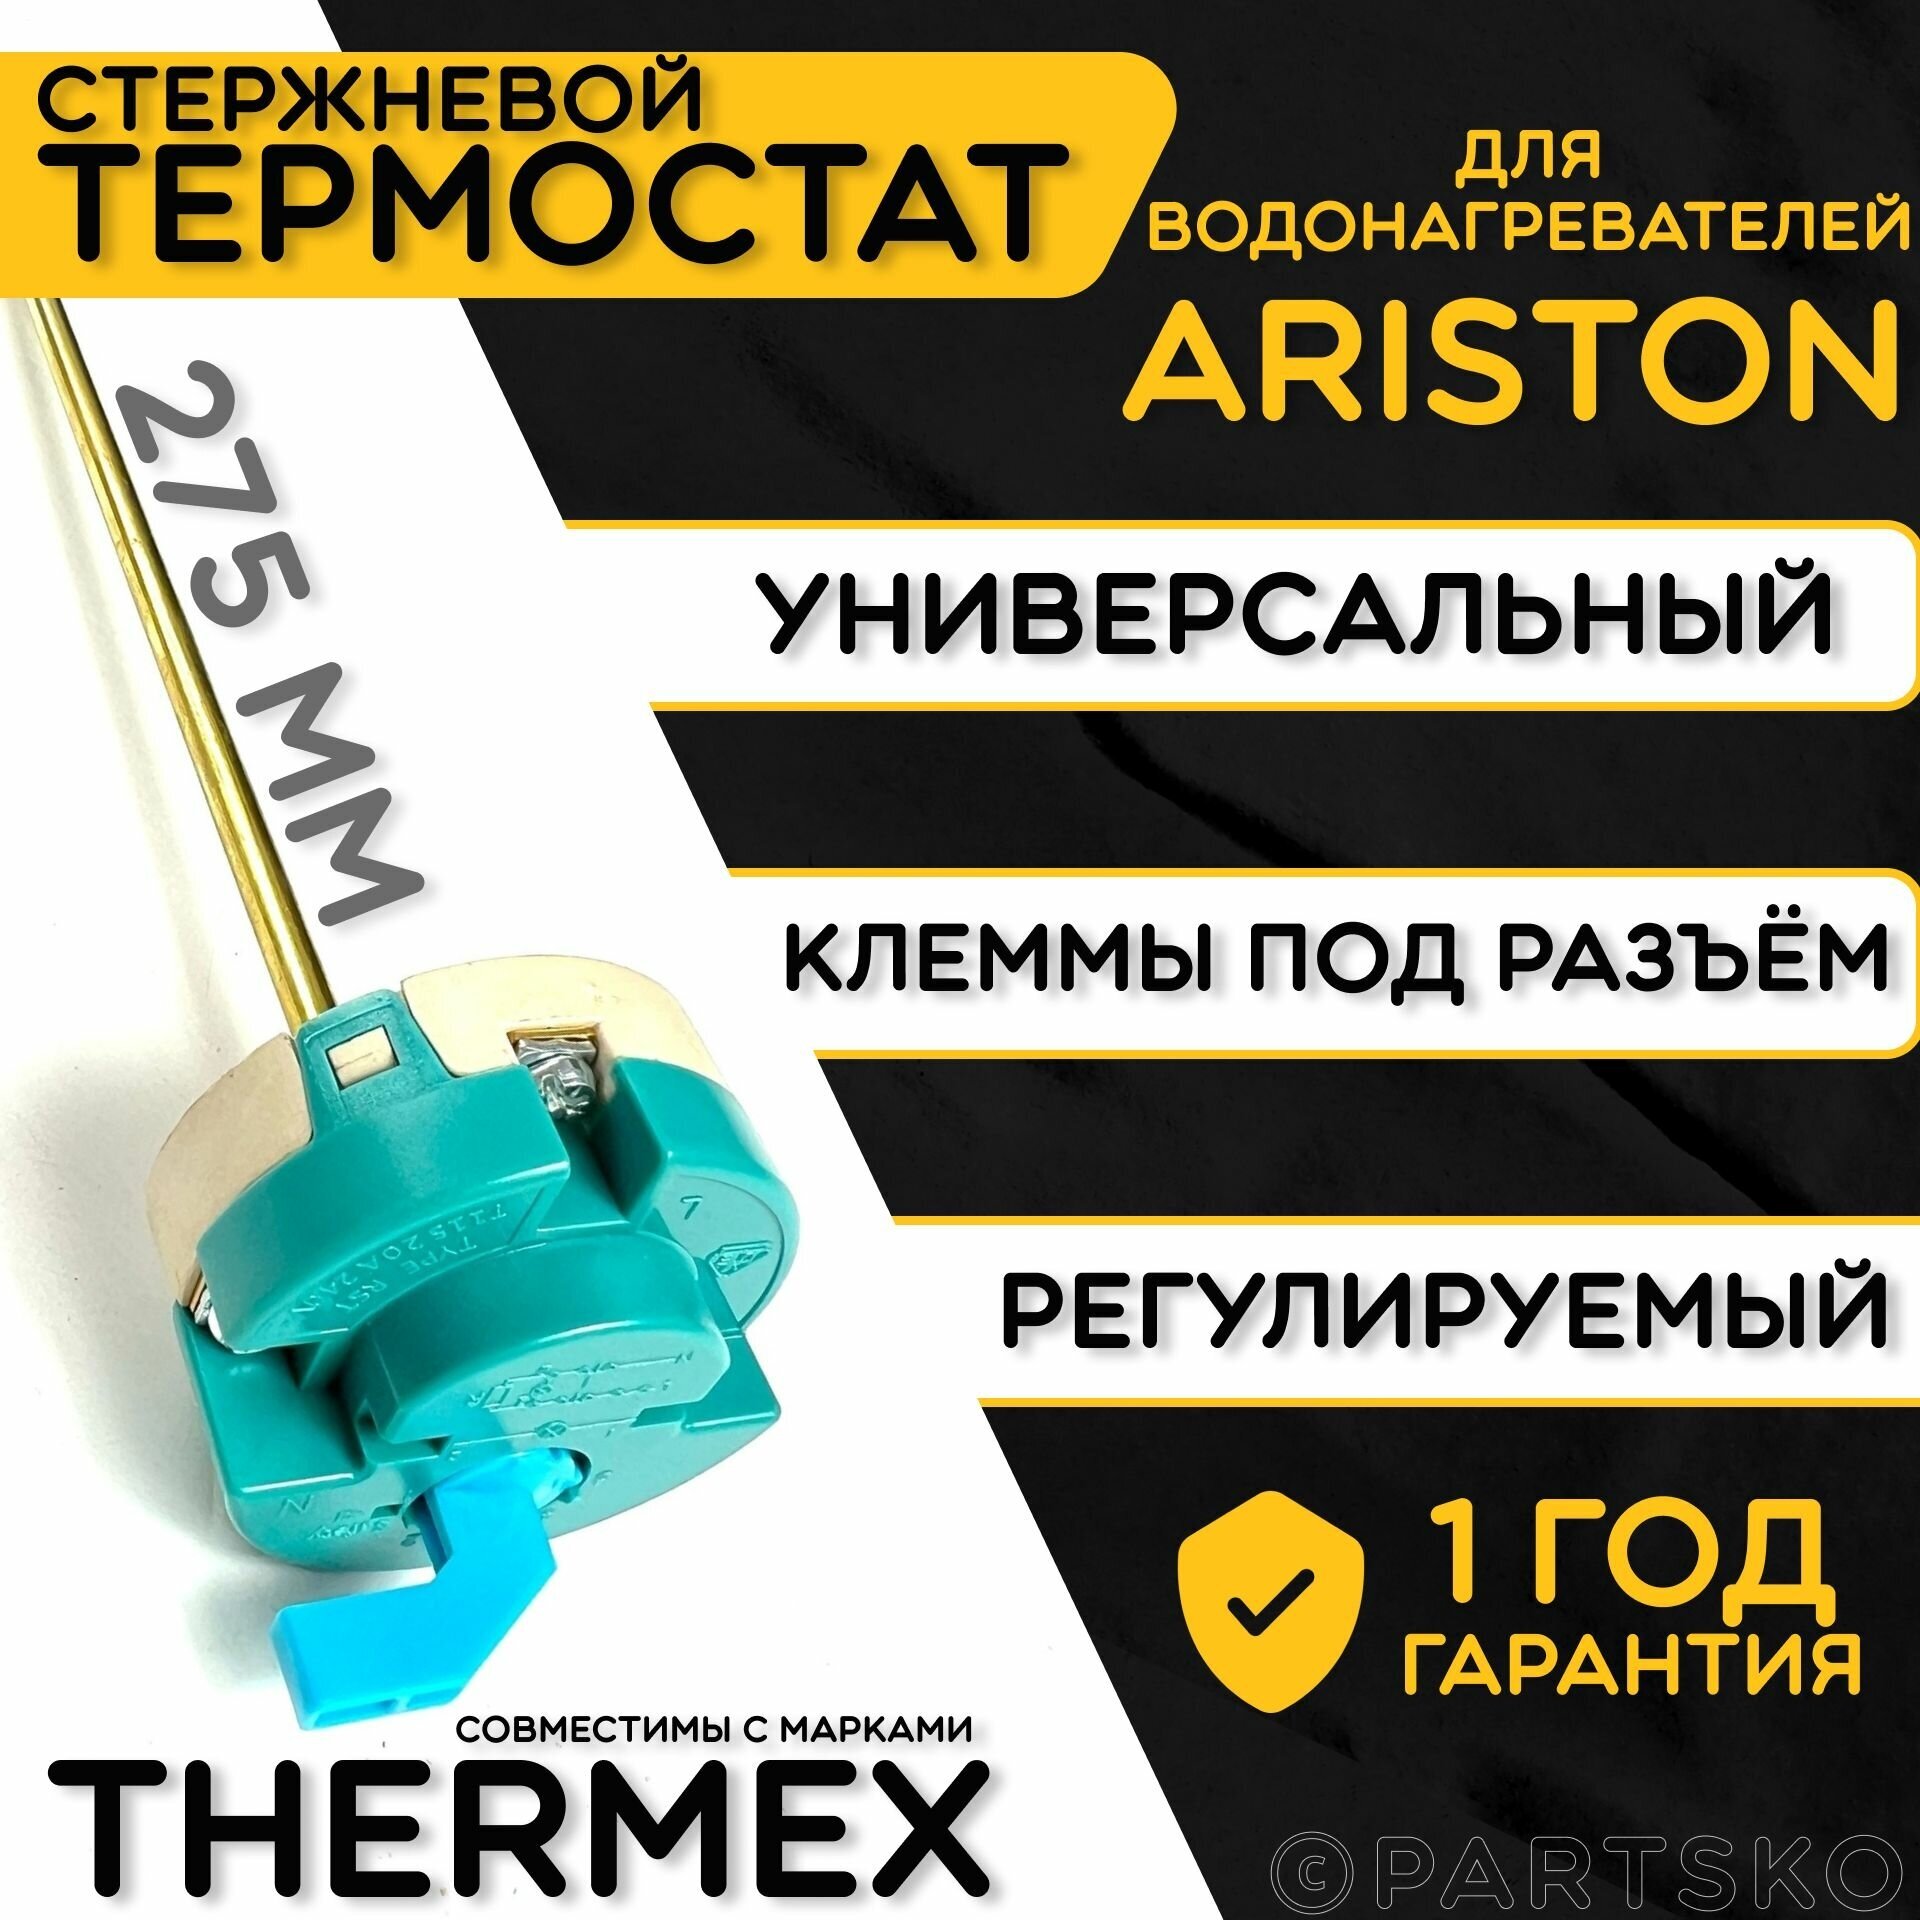 Термостат для водонагревателя Thermex. RST 20A, 25-70C, 275 мм. Стержневой датчик для трубчатых водонагревателей с регулятором температур Термекс.